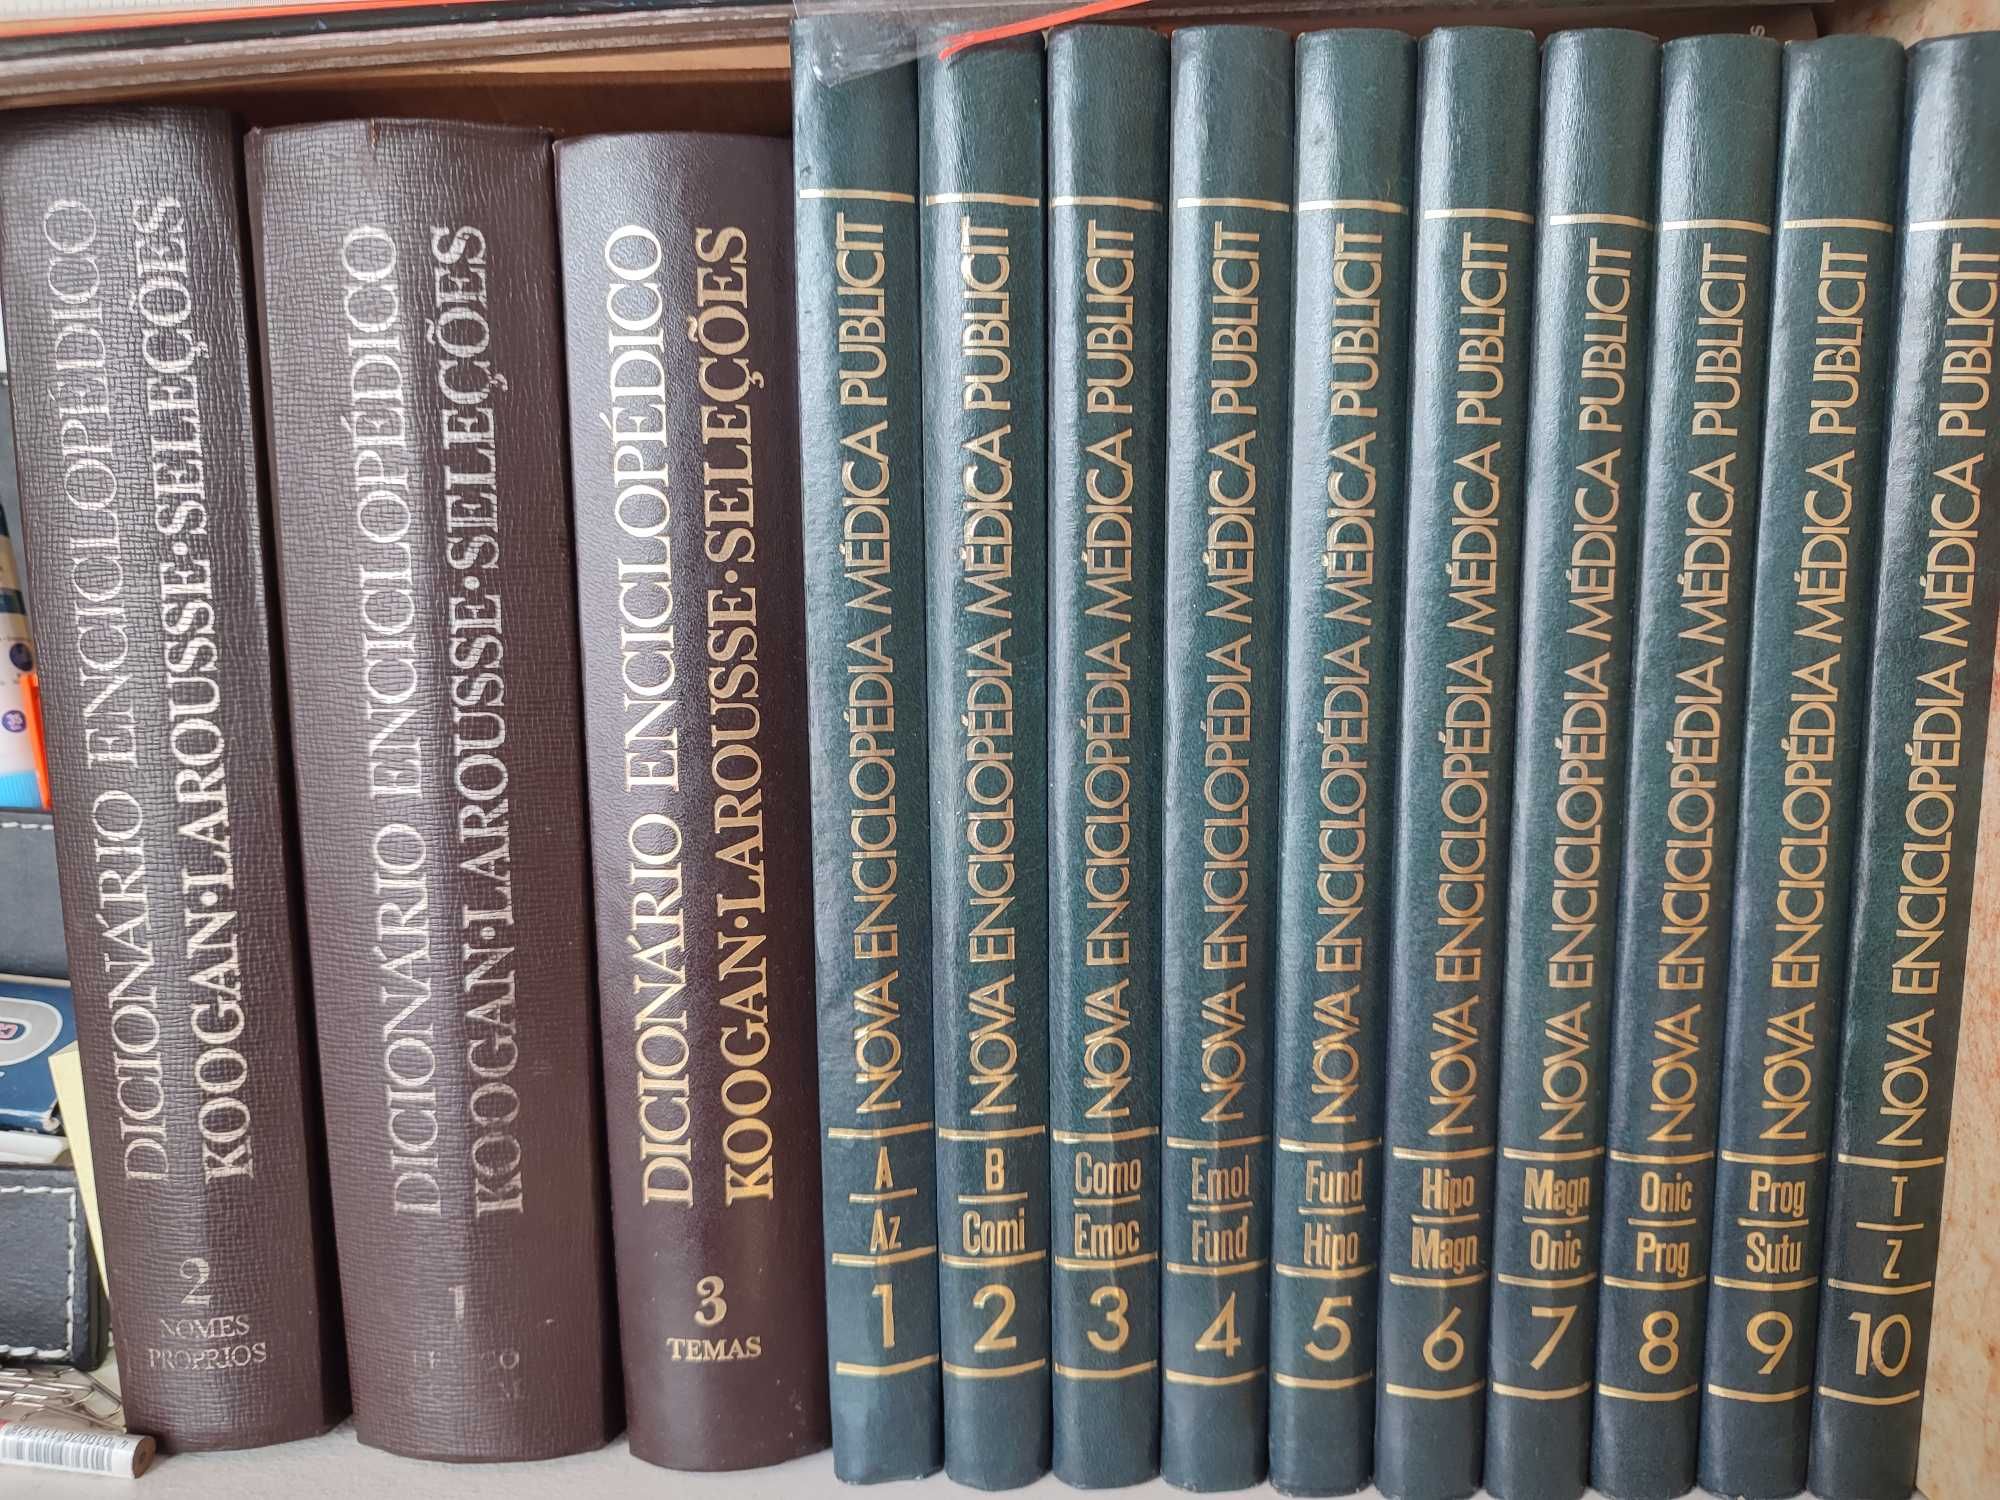 Coleção de livros Dicionário e Enciclopédias